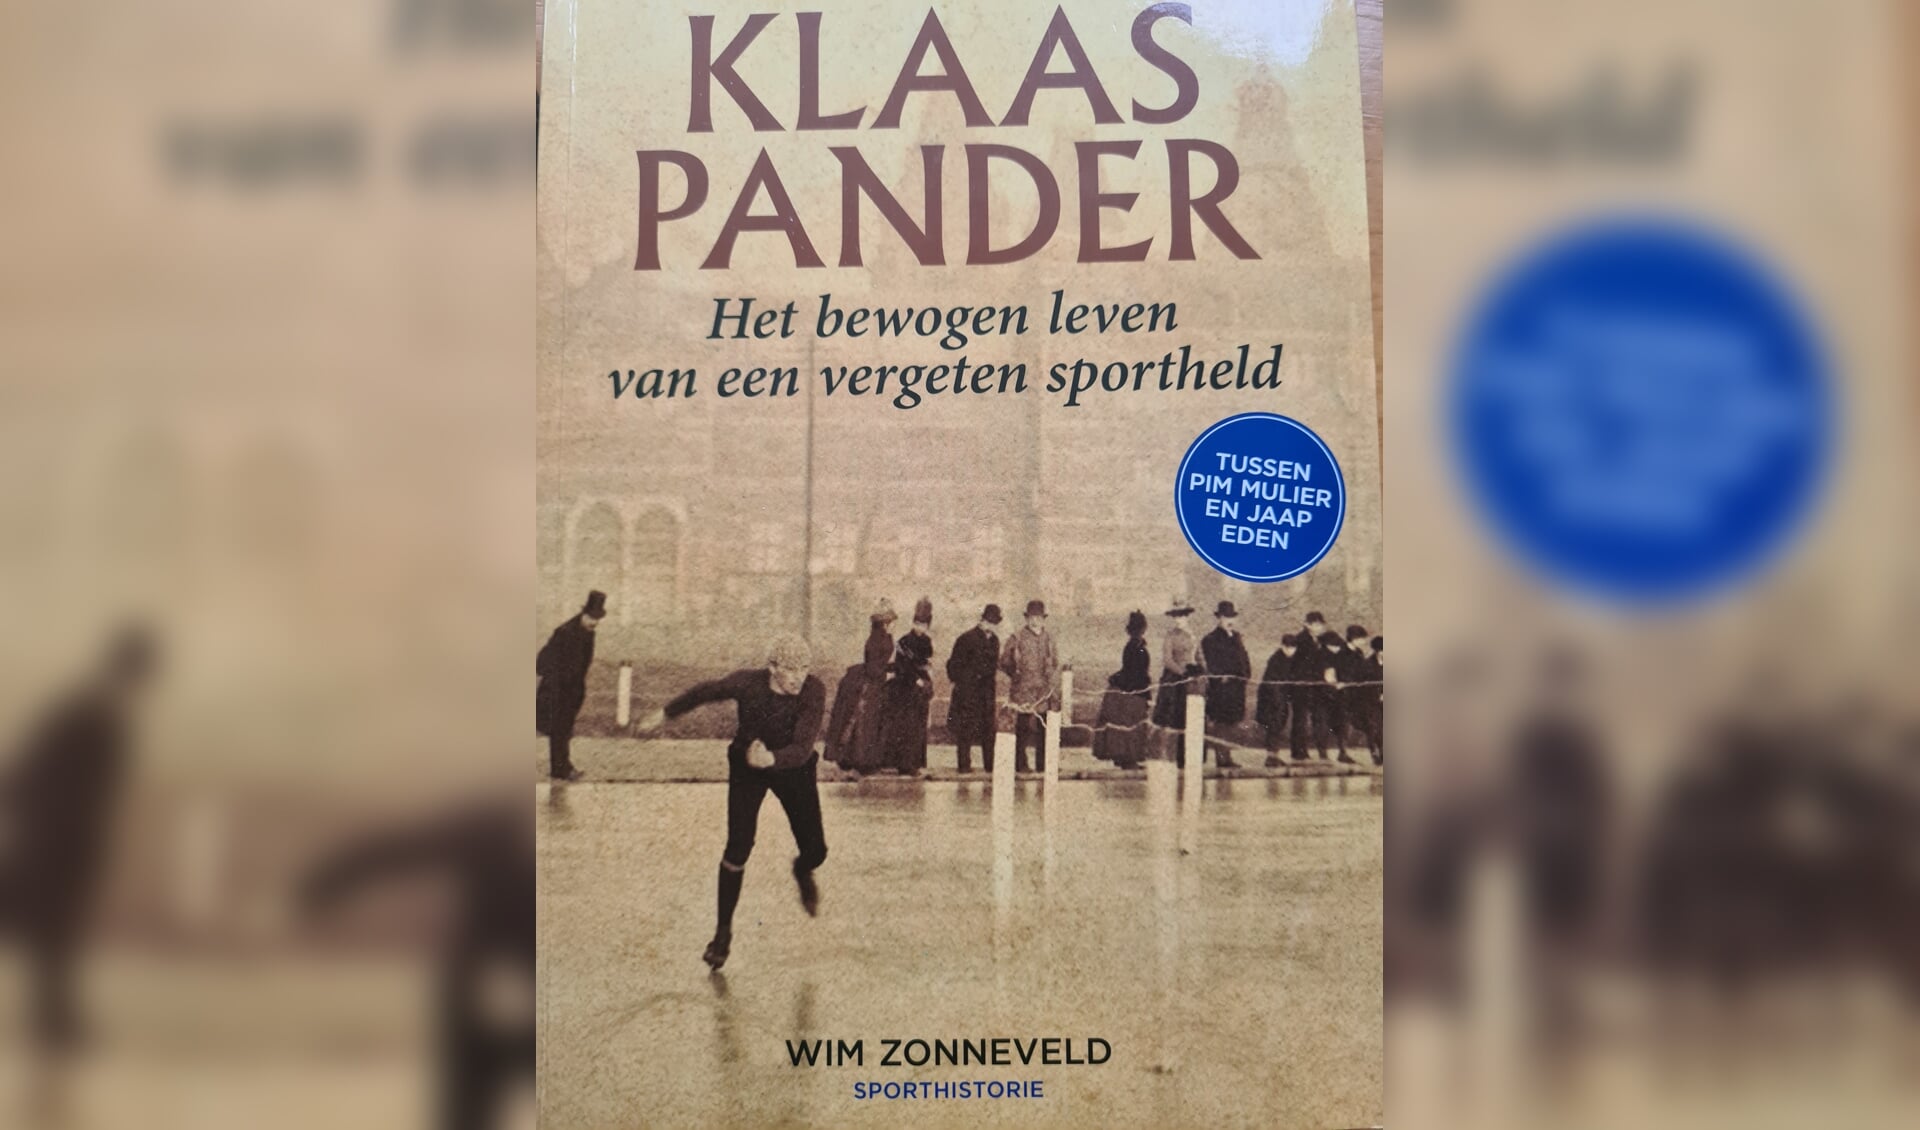 Het boek dat Wim Sonneveld over Klaas Pander schreef, met Pander op de voorgrond